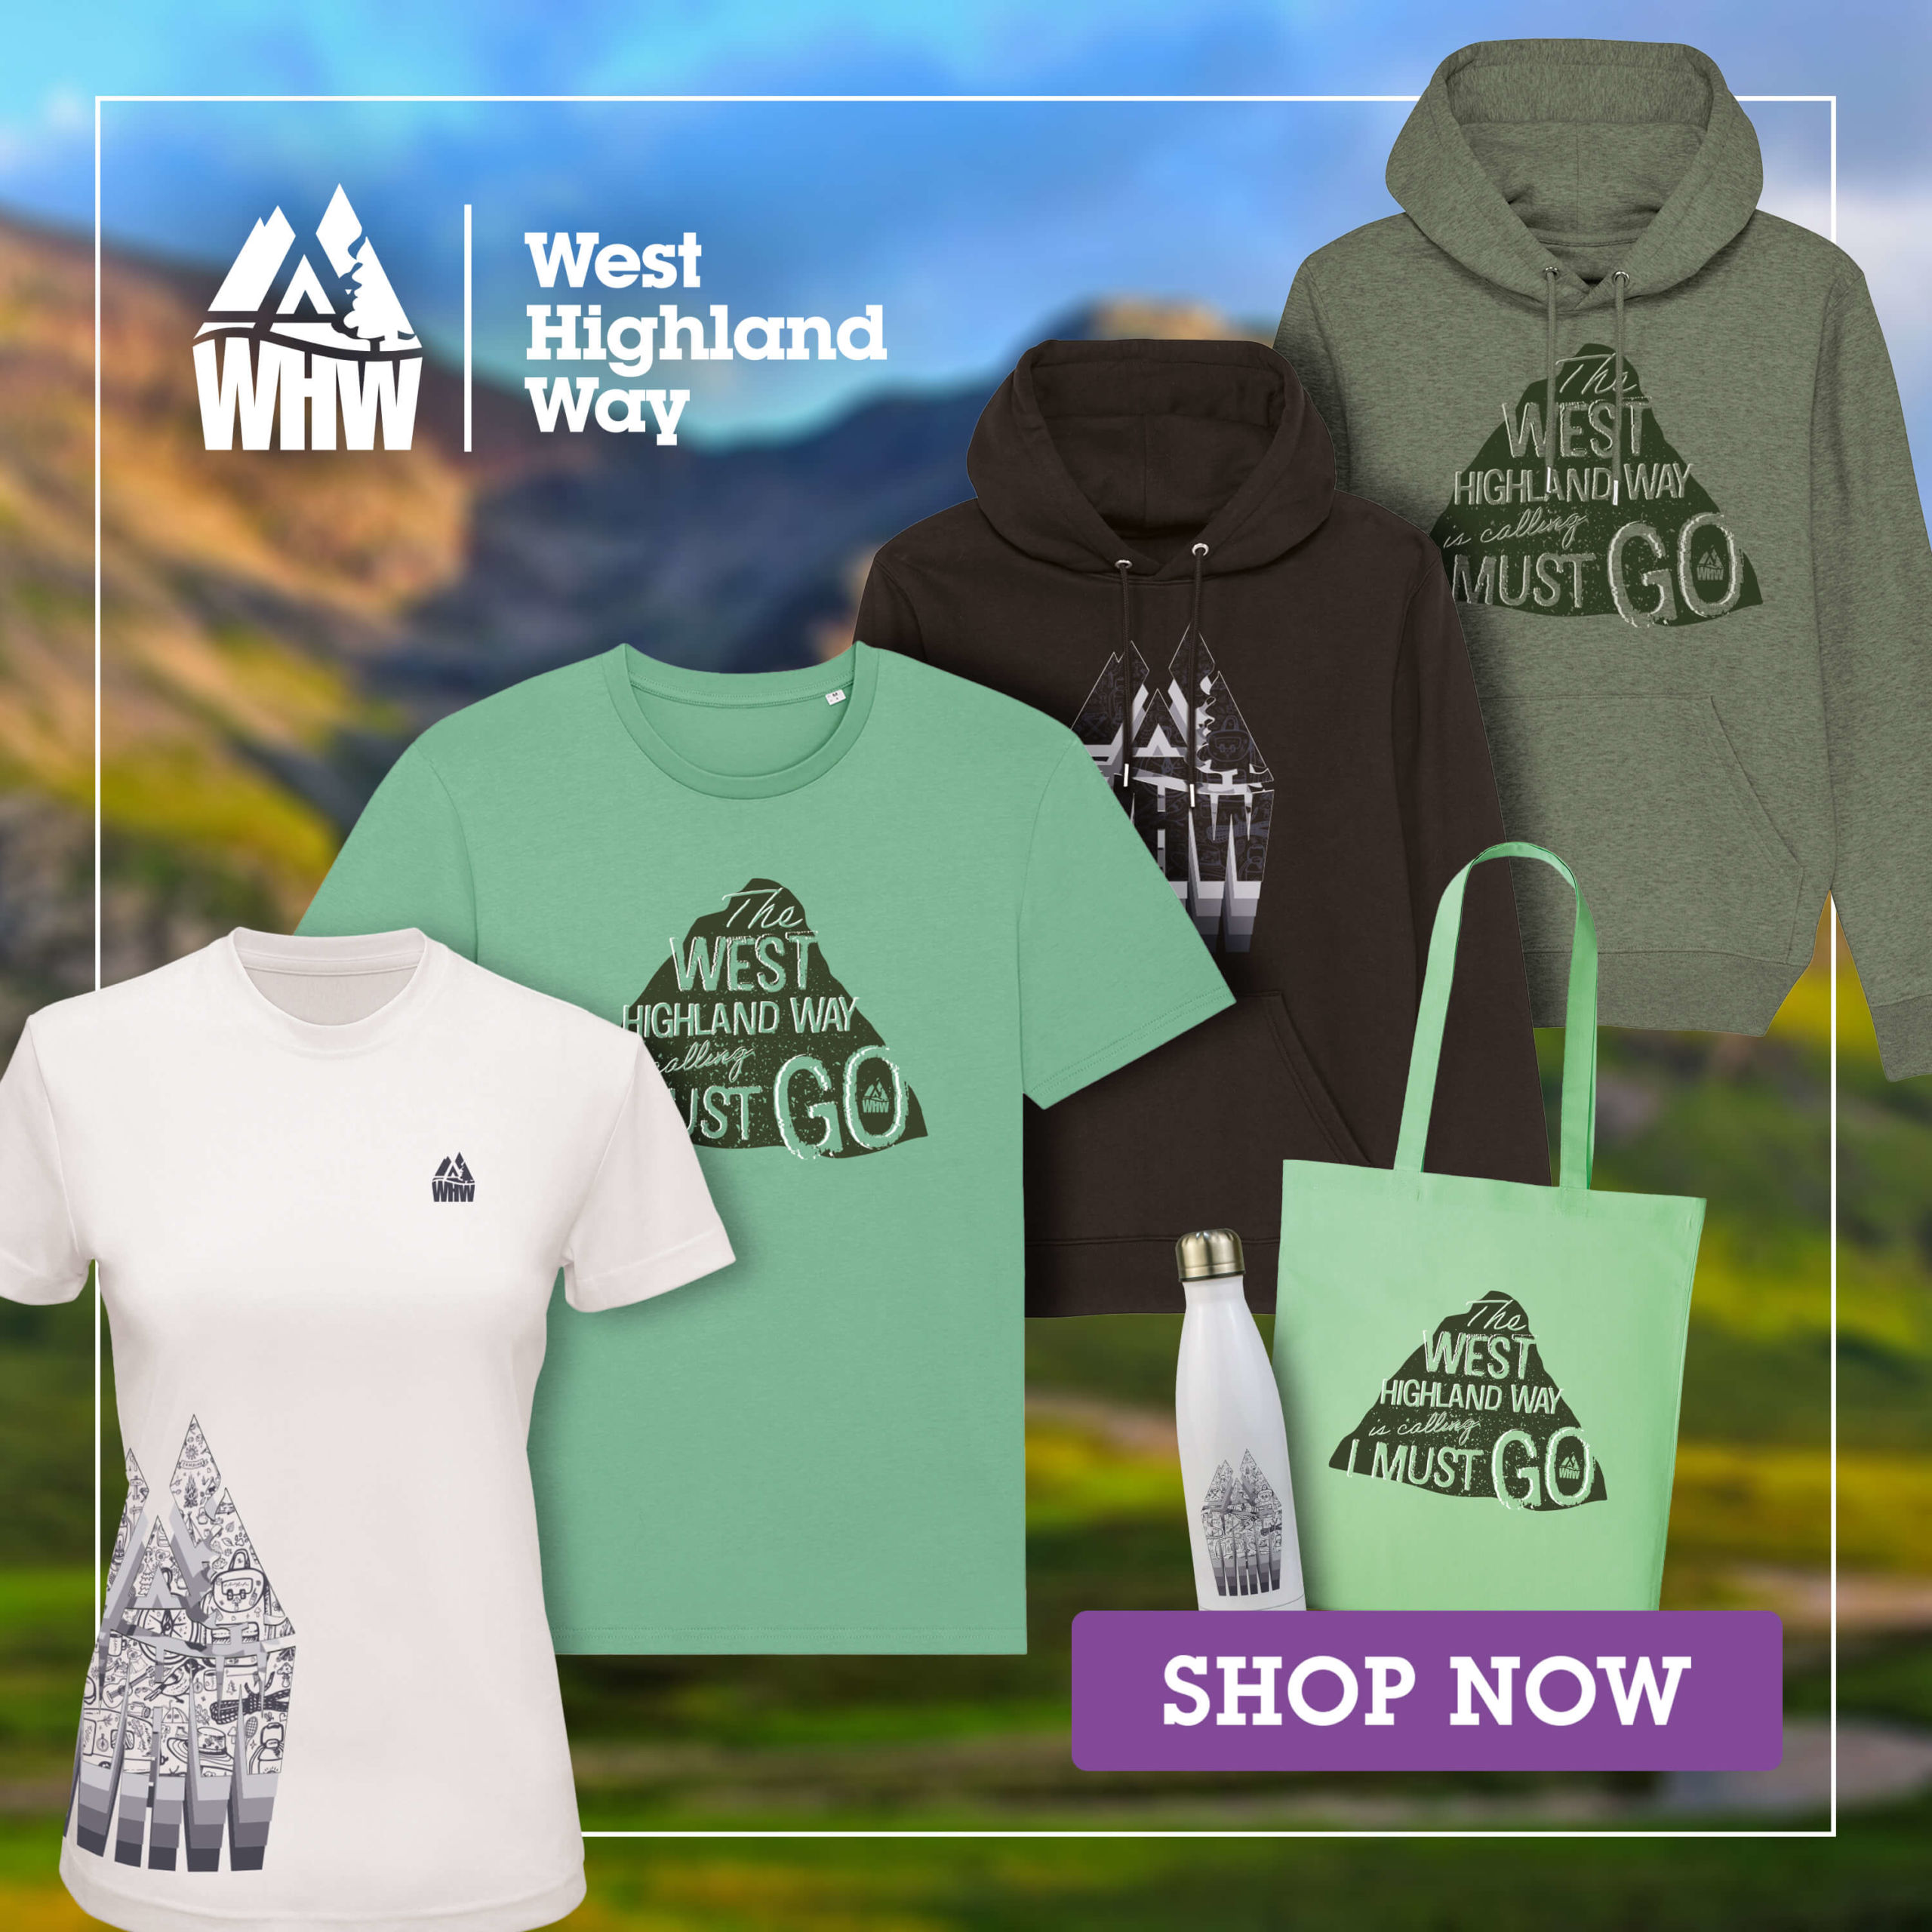 West Highland Way merchandise